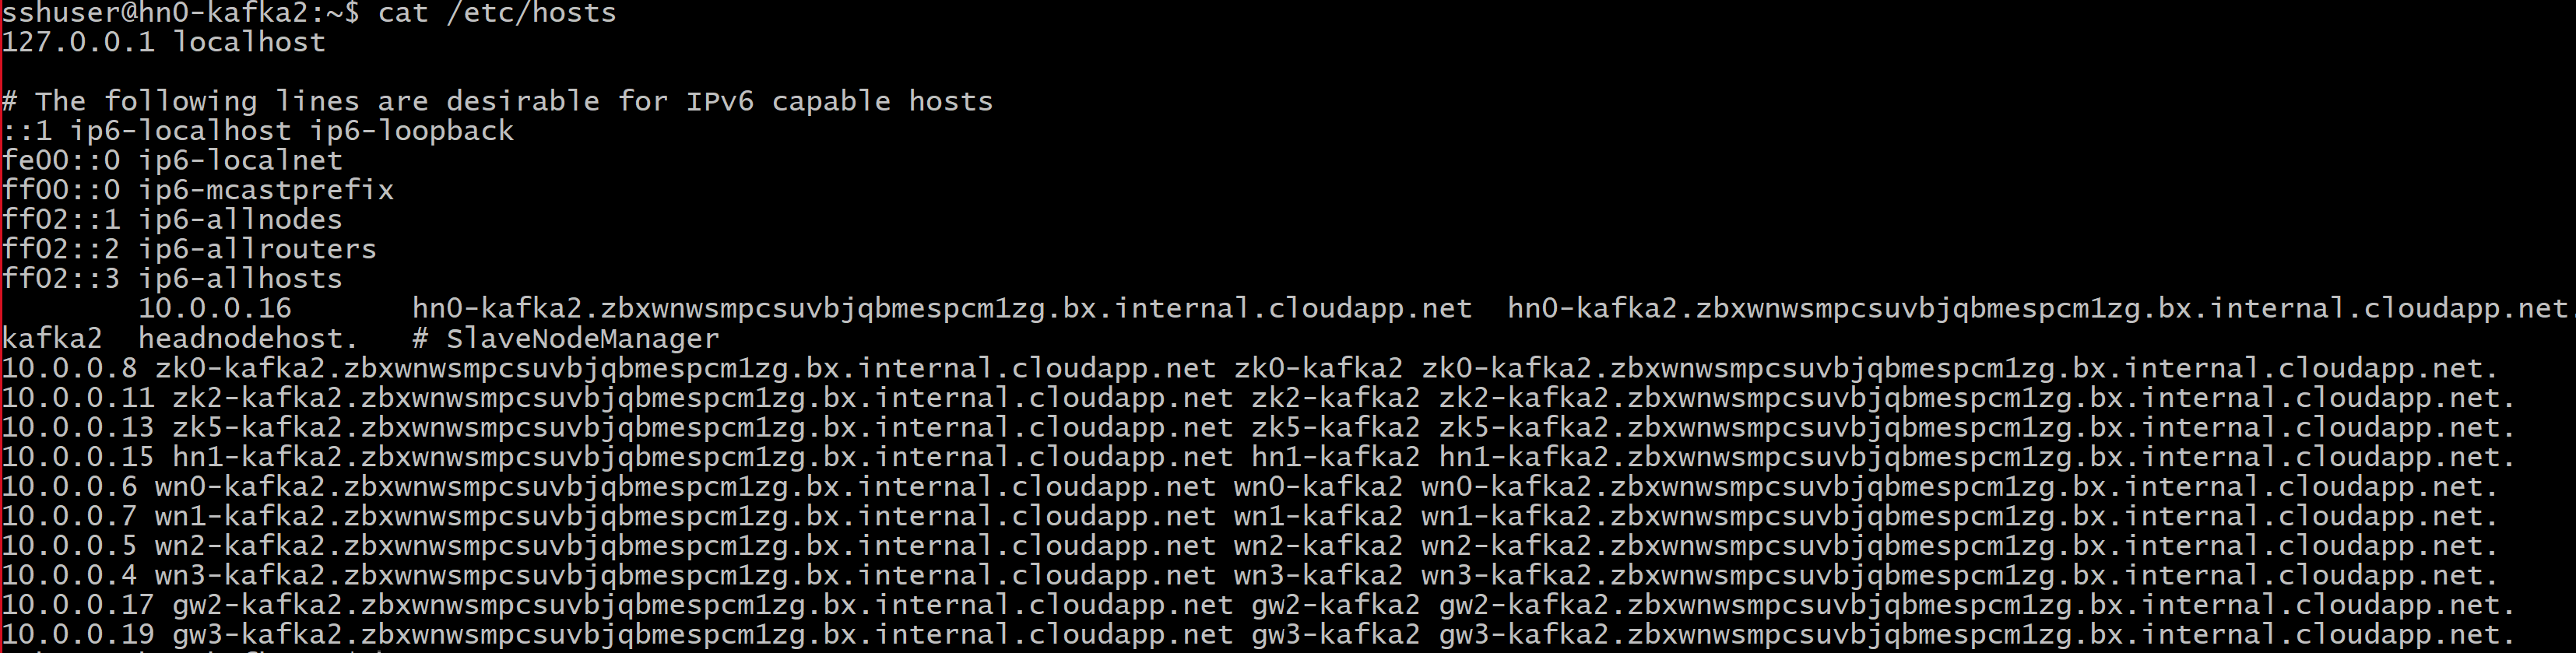 Screenshot che mostra l'output del file hosts.